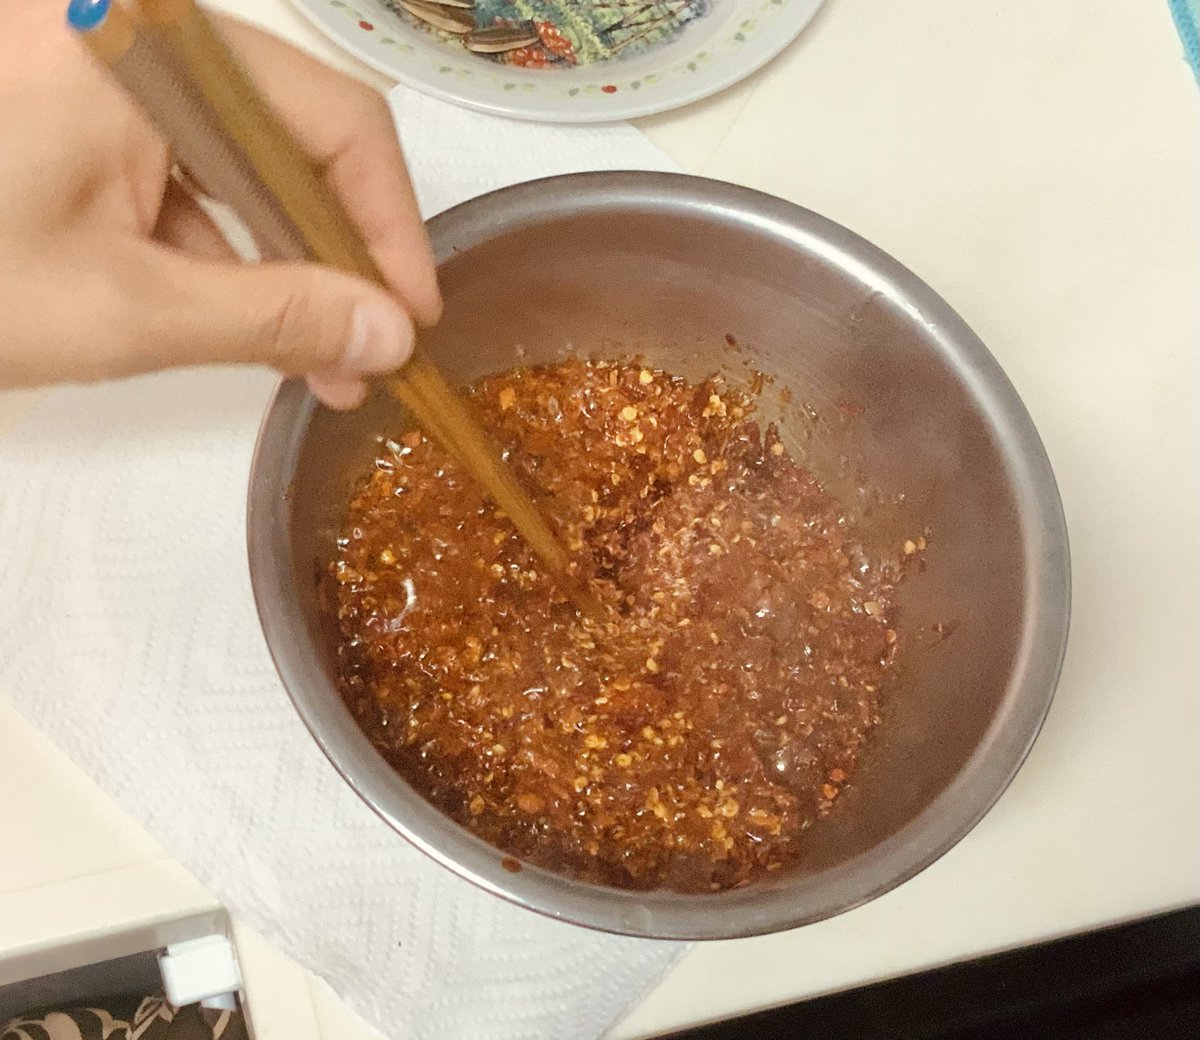 今月の「月サンの〆切ごはんレシピ」は『手作りラー油』です。
このいい匂い! ああ! 中国の匂い!! https://t.co/Ho46AAEvzH 